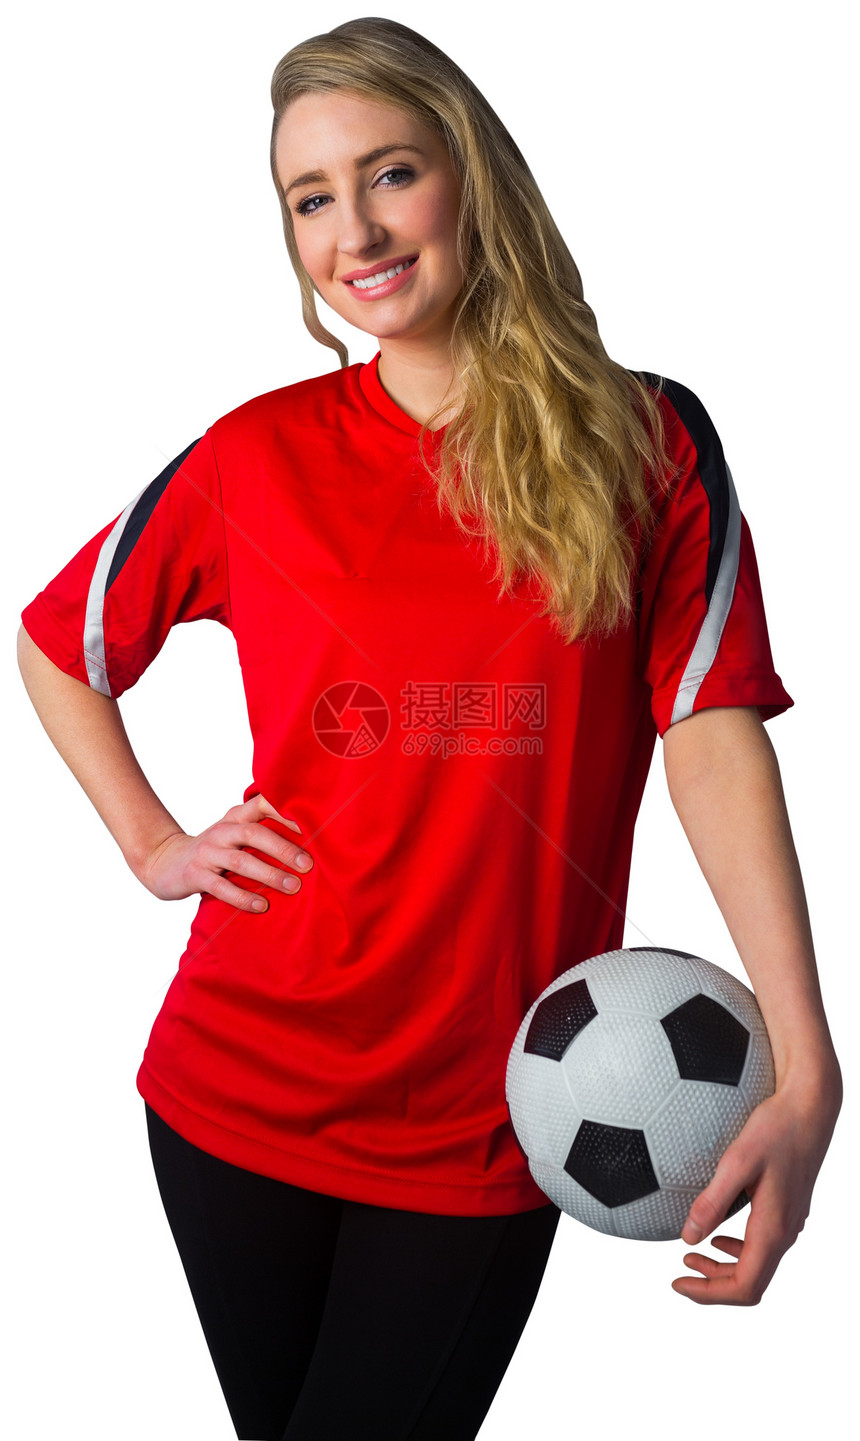 红红色的漂亮足球球迷喜悦欣快感球衣获奖快乐世界女士活力杯子运动图片